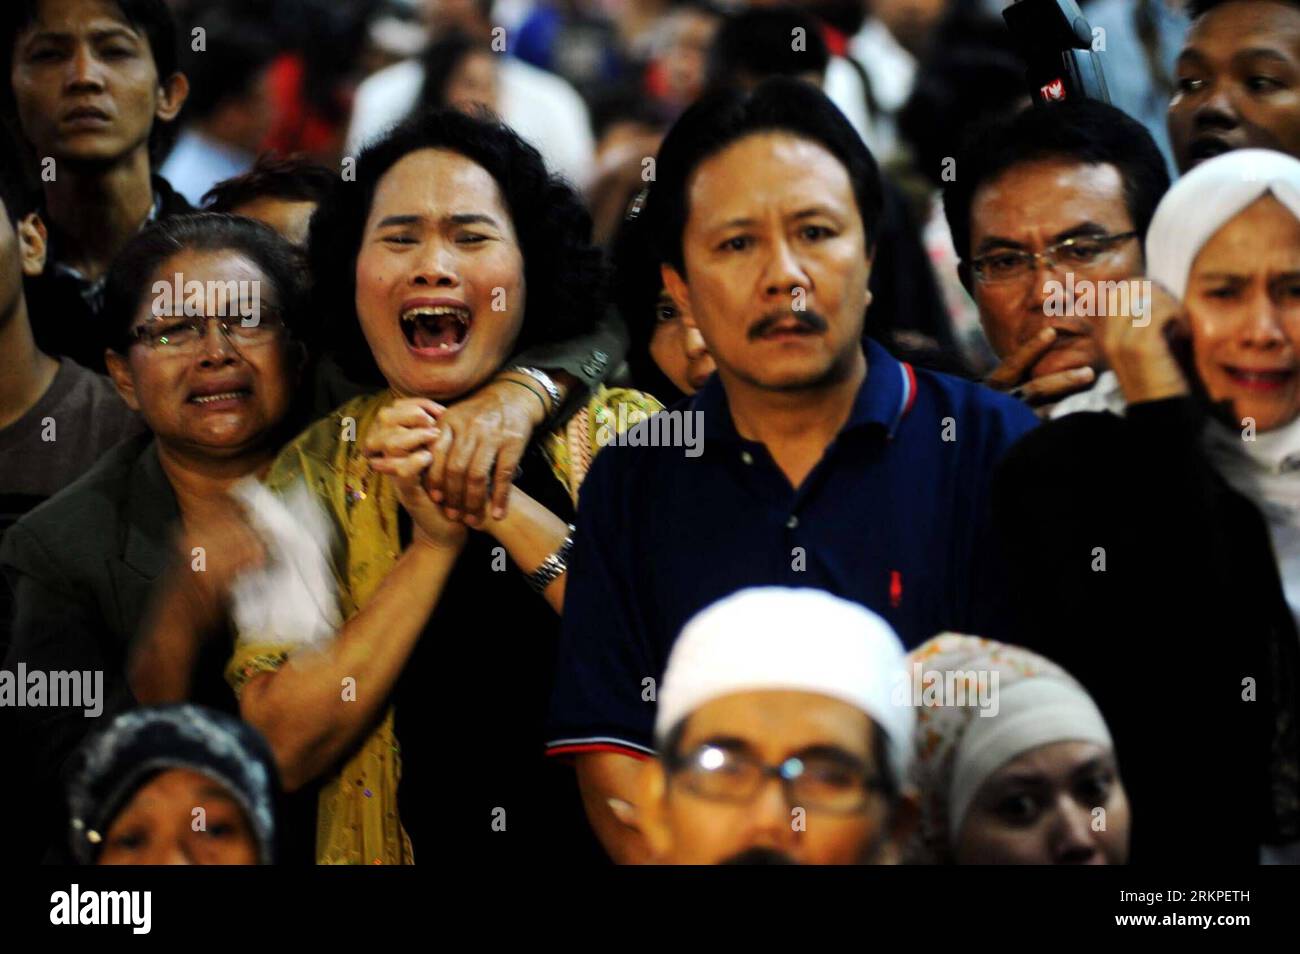 Bildnummer : 57978368 Datum : 11.05.2012 Copyright : imago/Xinhua (120511) -- JAKARTA, 11 mai 2012 (Xinhua) -- les proches des victimes de Sukhoi Super jet-100 réagissent en regardant les nouvelles de la télévision locale sur les derniers progrès des recherches, à l'aéroport Halim Perdana Kusuma de Jakarta, Indonésie, le 11 mai 2012. Les sauveteurs indonésiens ont déclaré vendredi avoir récupéré 12 corps près de l’épave d’un super jet-100 de fabrication russe Sukhoi qui s’est écrasé mercredi dans la pente abrupte du mont Salak à Bogor, Java occidental. (Xinhua/Agung Kuncahya B.) (zw) INDONÉSIE-RUSSIE-AVION-CRASH-AFTERMATH PUBLICATIONxNOTxINxCHN G Banque D'Images